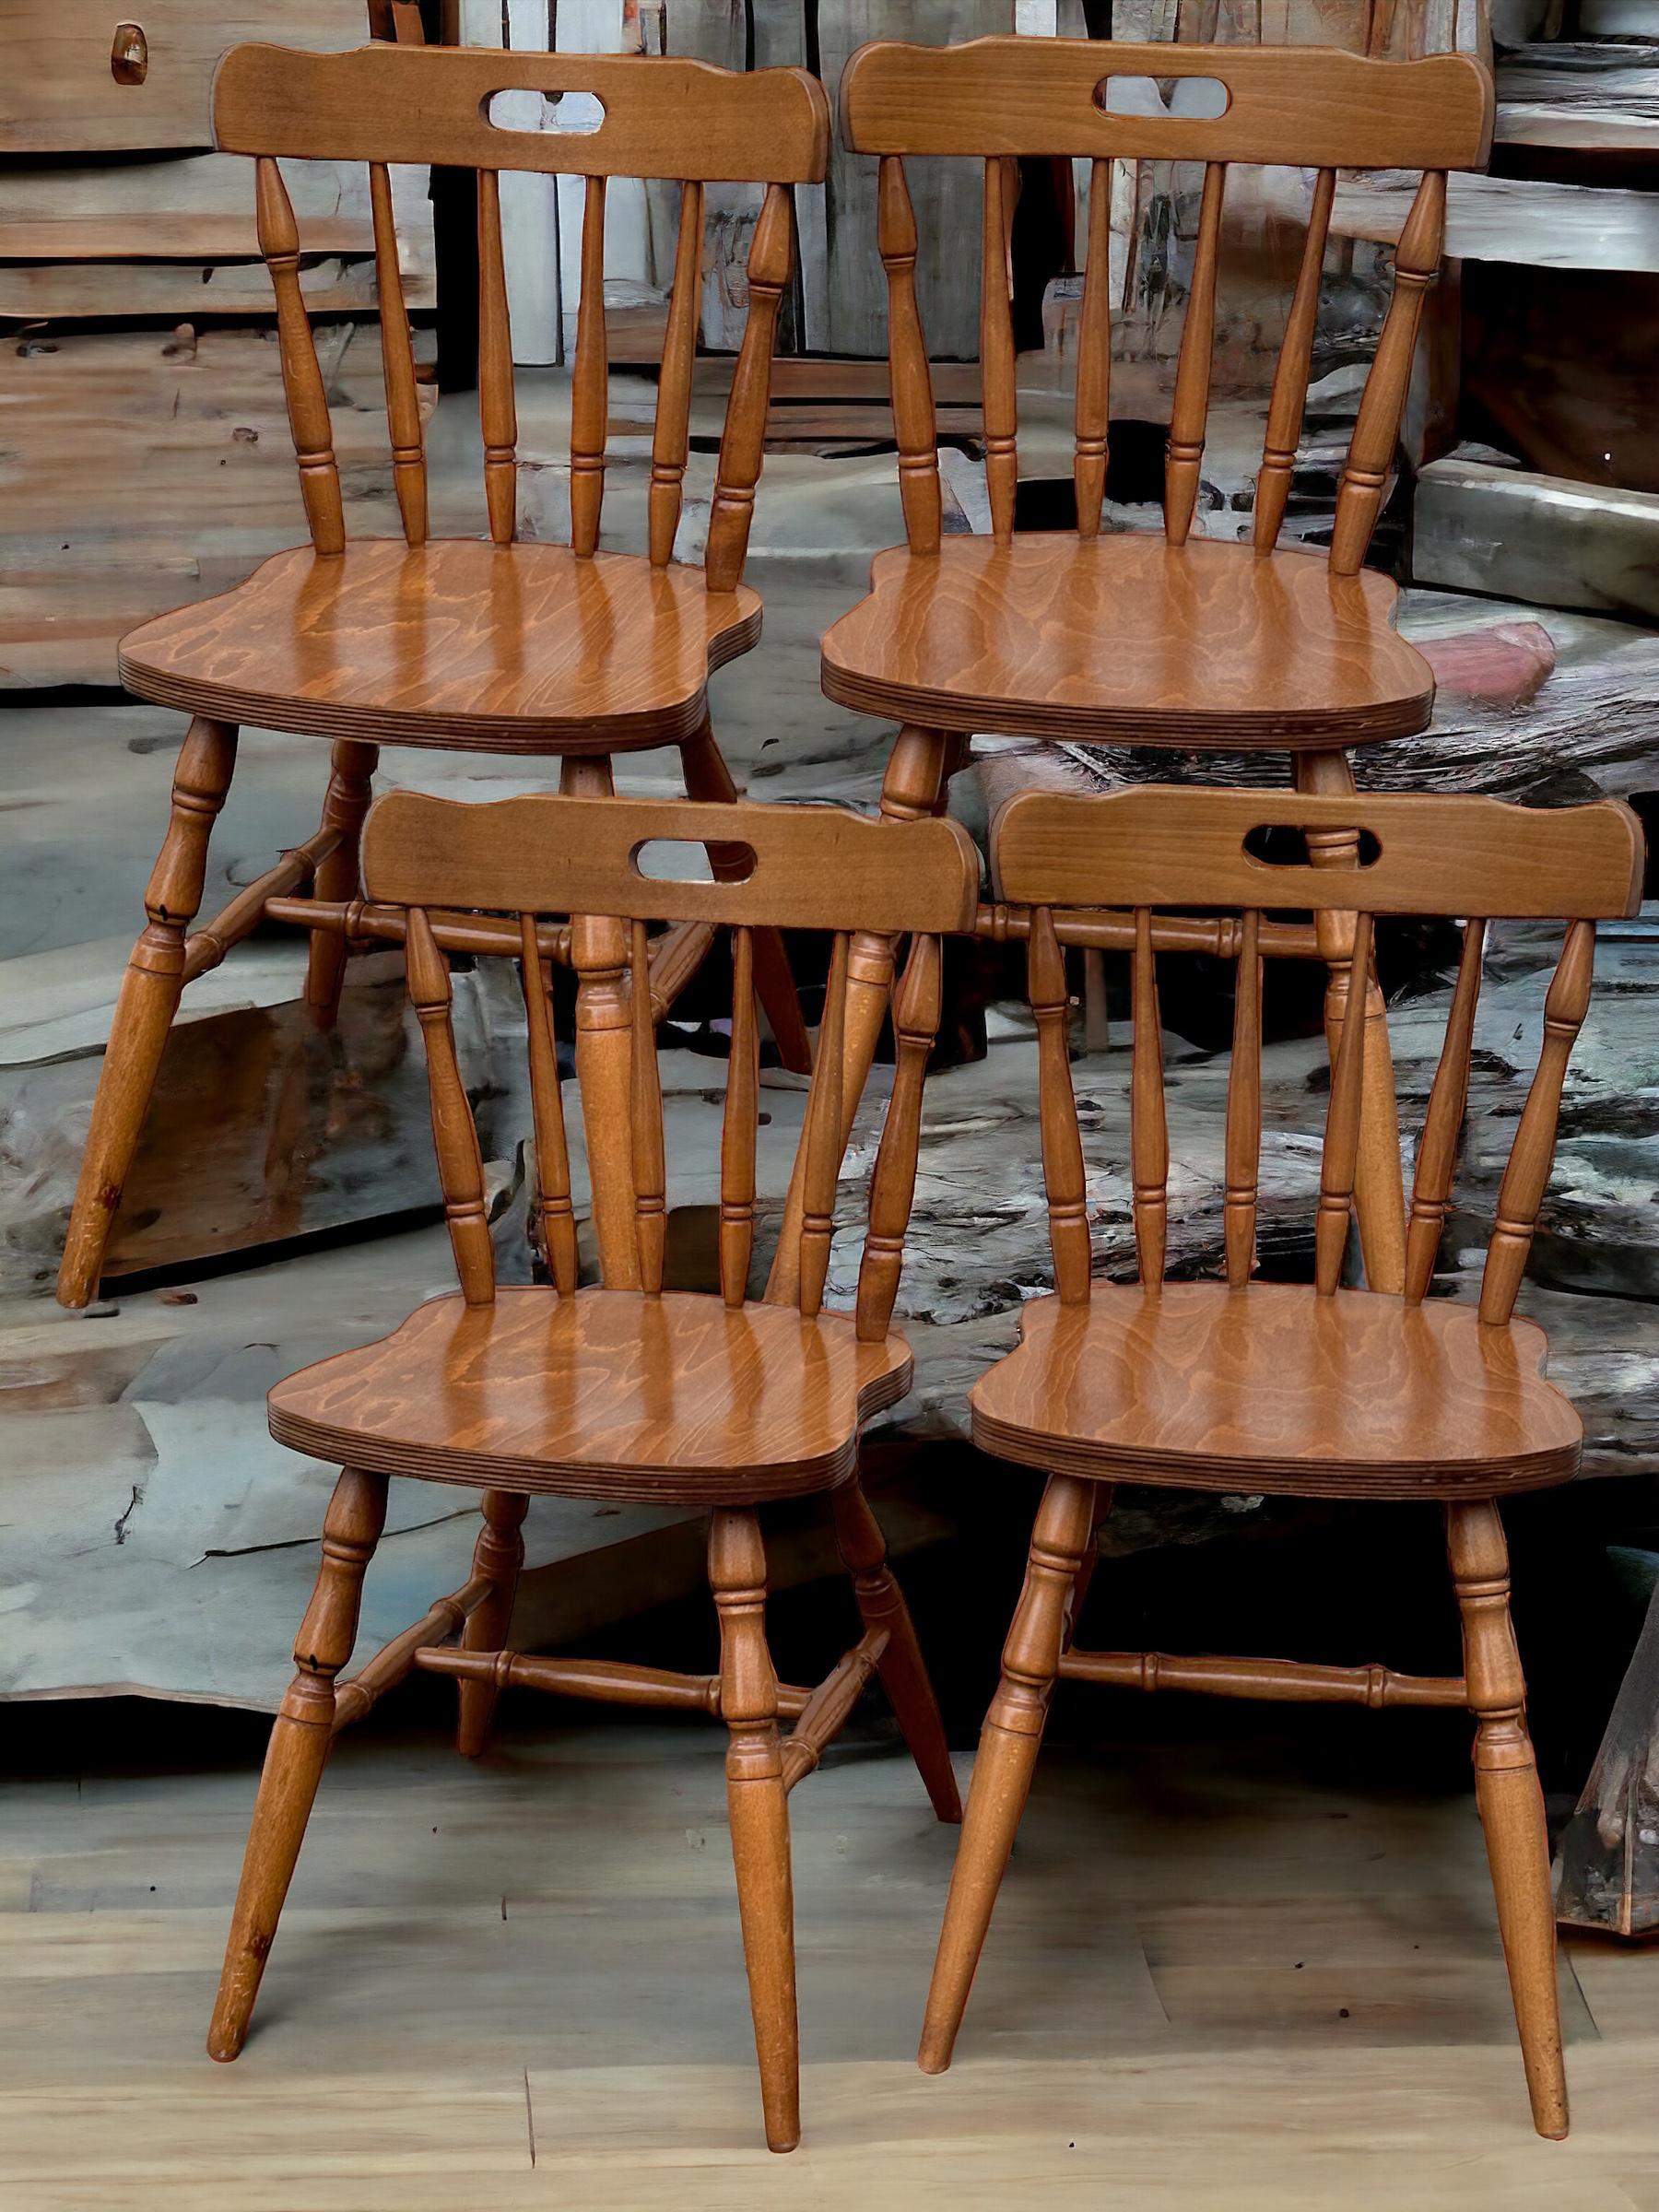 Ein Set bestehend aus 4 Stühlen aus einem Wirtshausrestaurant in Nürnberg Bayern. Diese Stühle wurden jahrelang im Speisesaal des Restaurants verwendet. Jeder Hocker ist in sehr gutem, gebrauchtem Zustand, die Rückenlehnen und Beine sind fest und